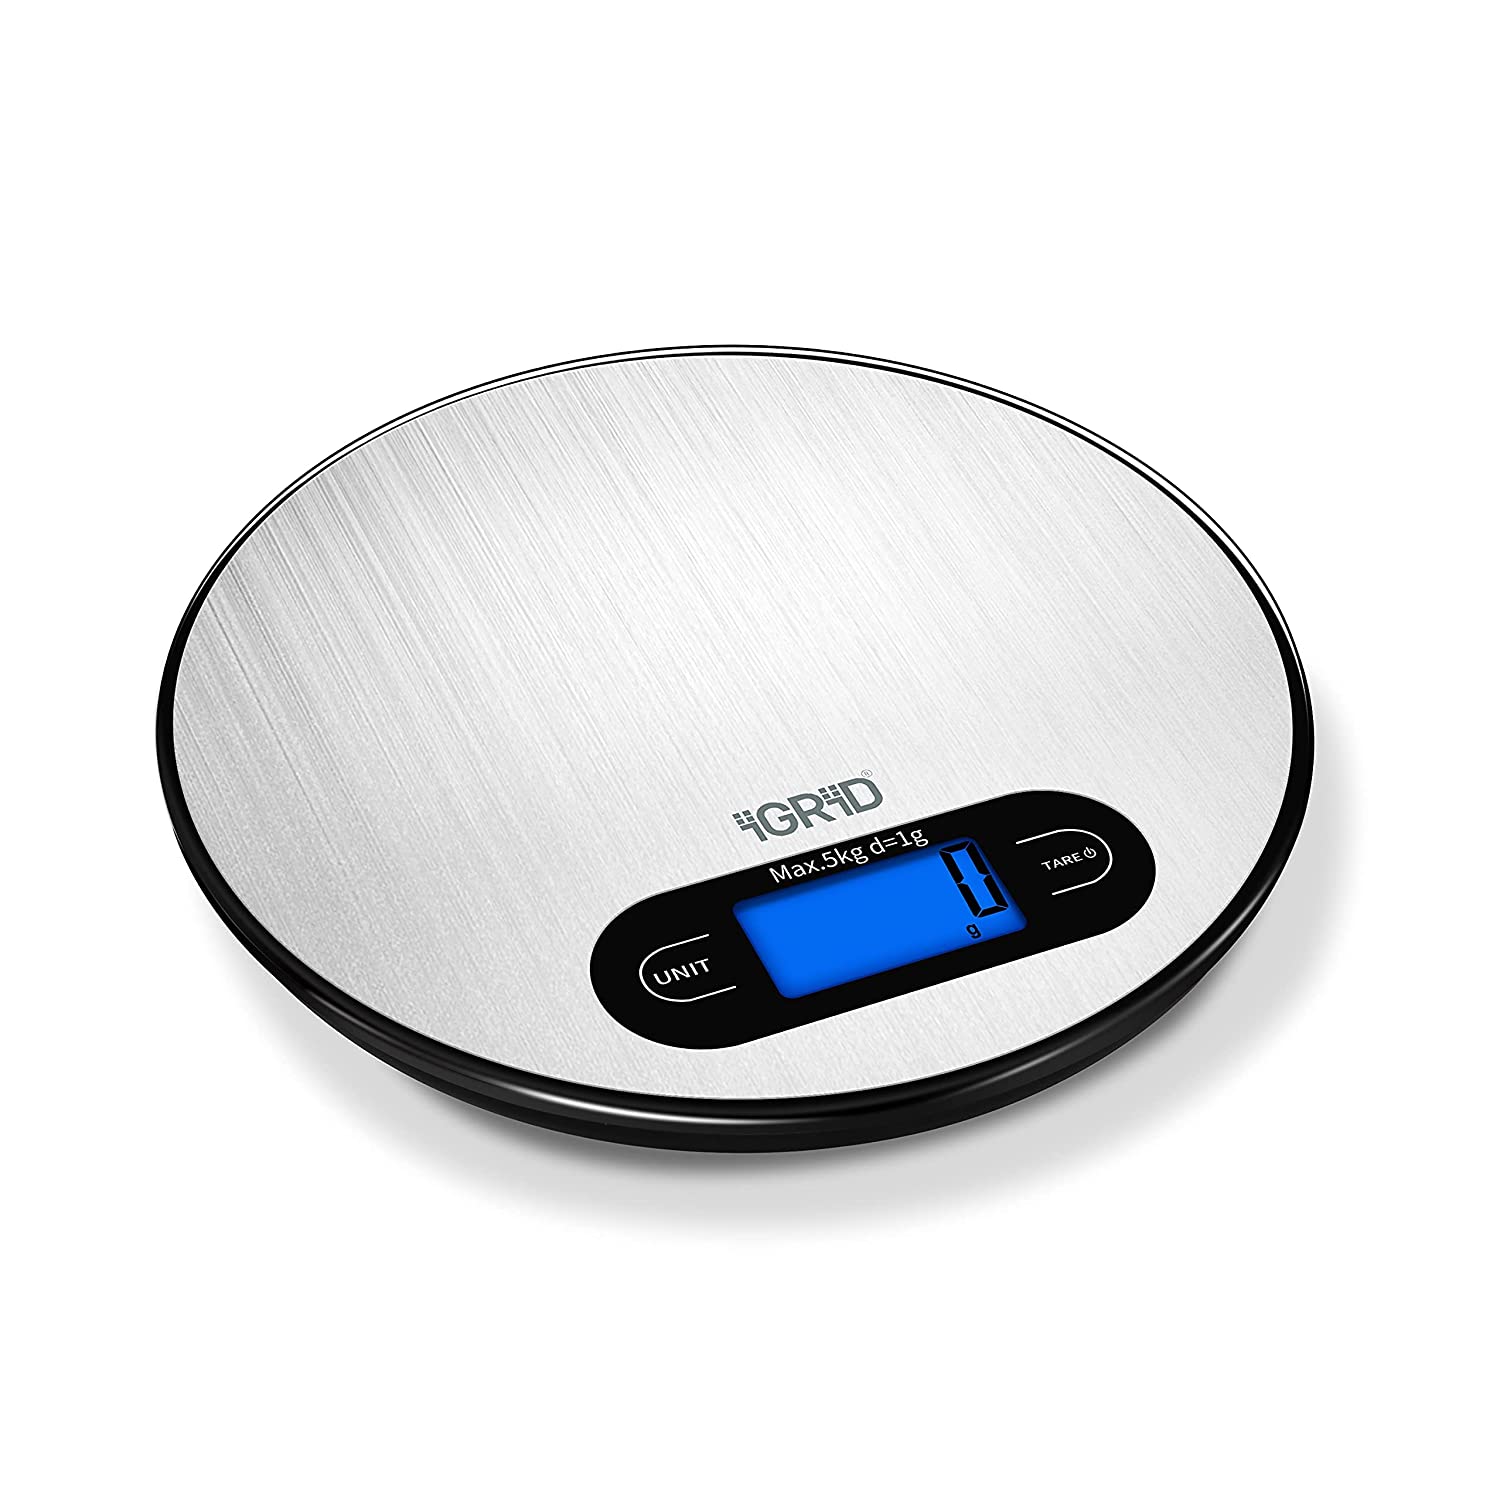 Starfrit Digital Kitchen Scale, 5-kg